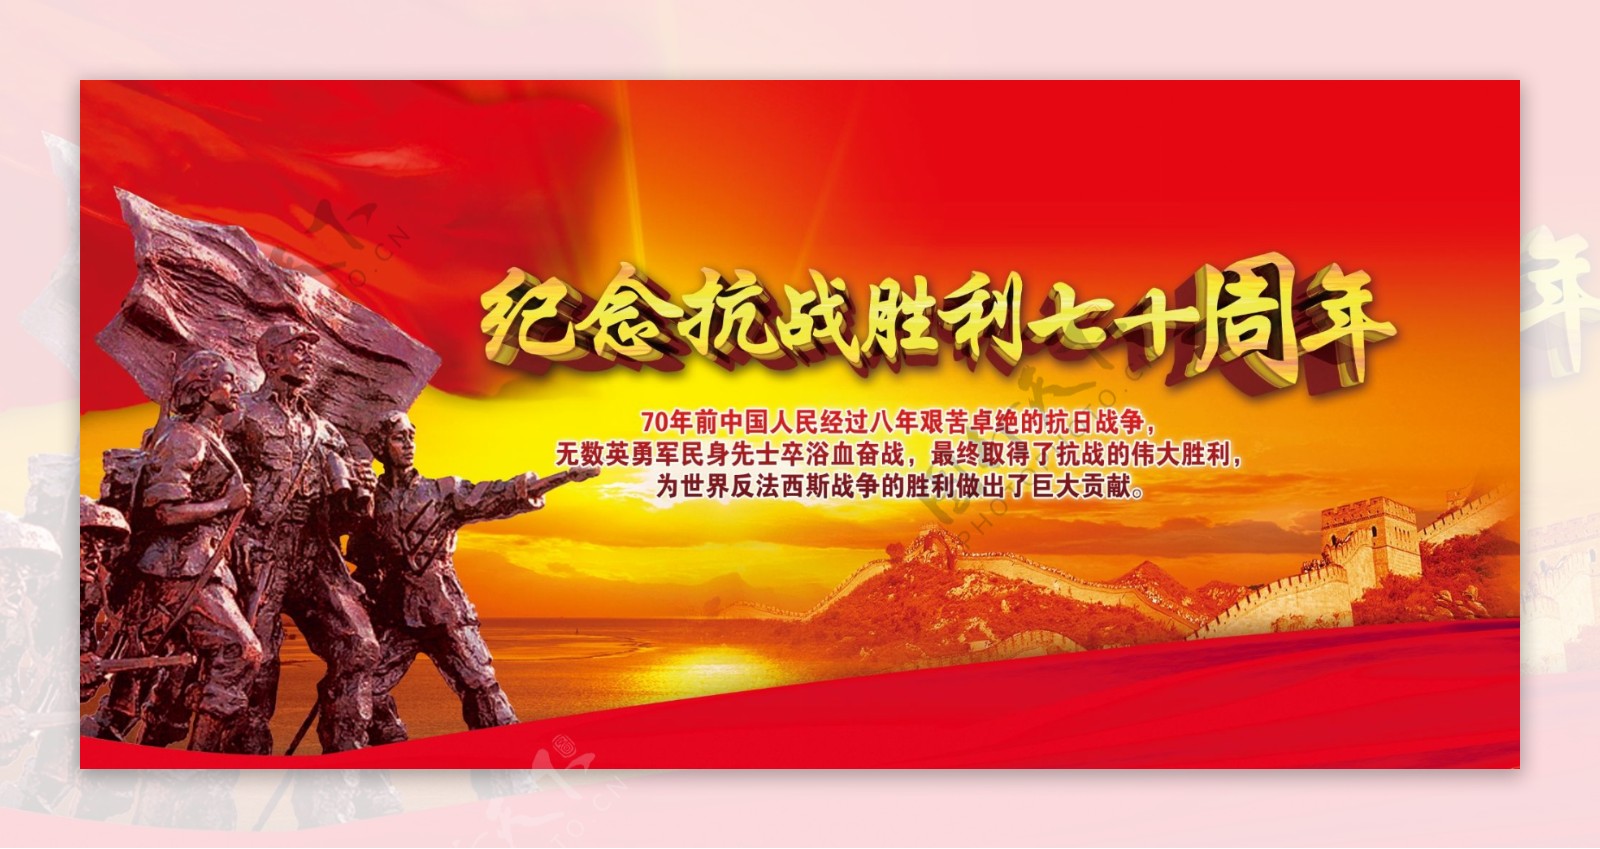 纪念中国抗战胜利70周年